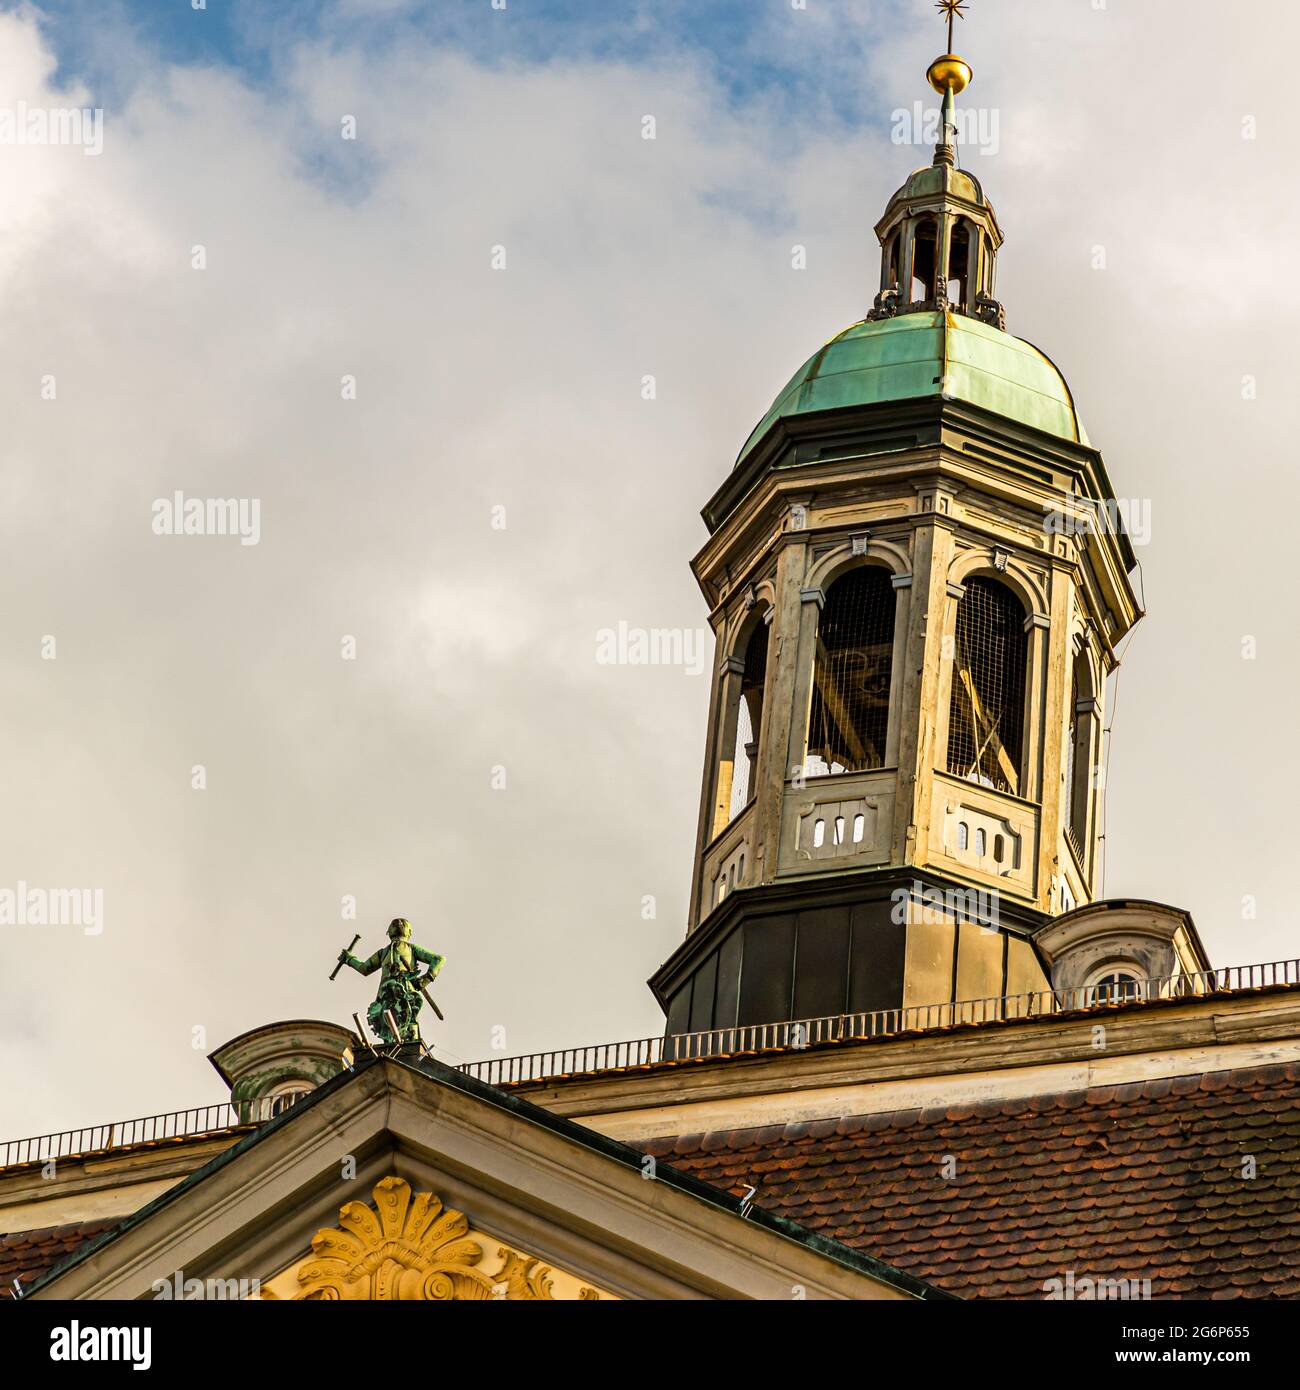 Die Figur von St. Moritz auf dem Dach des Rathauses von Coburg, Deutschland Stockfoto